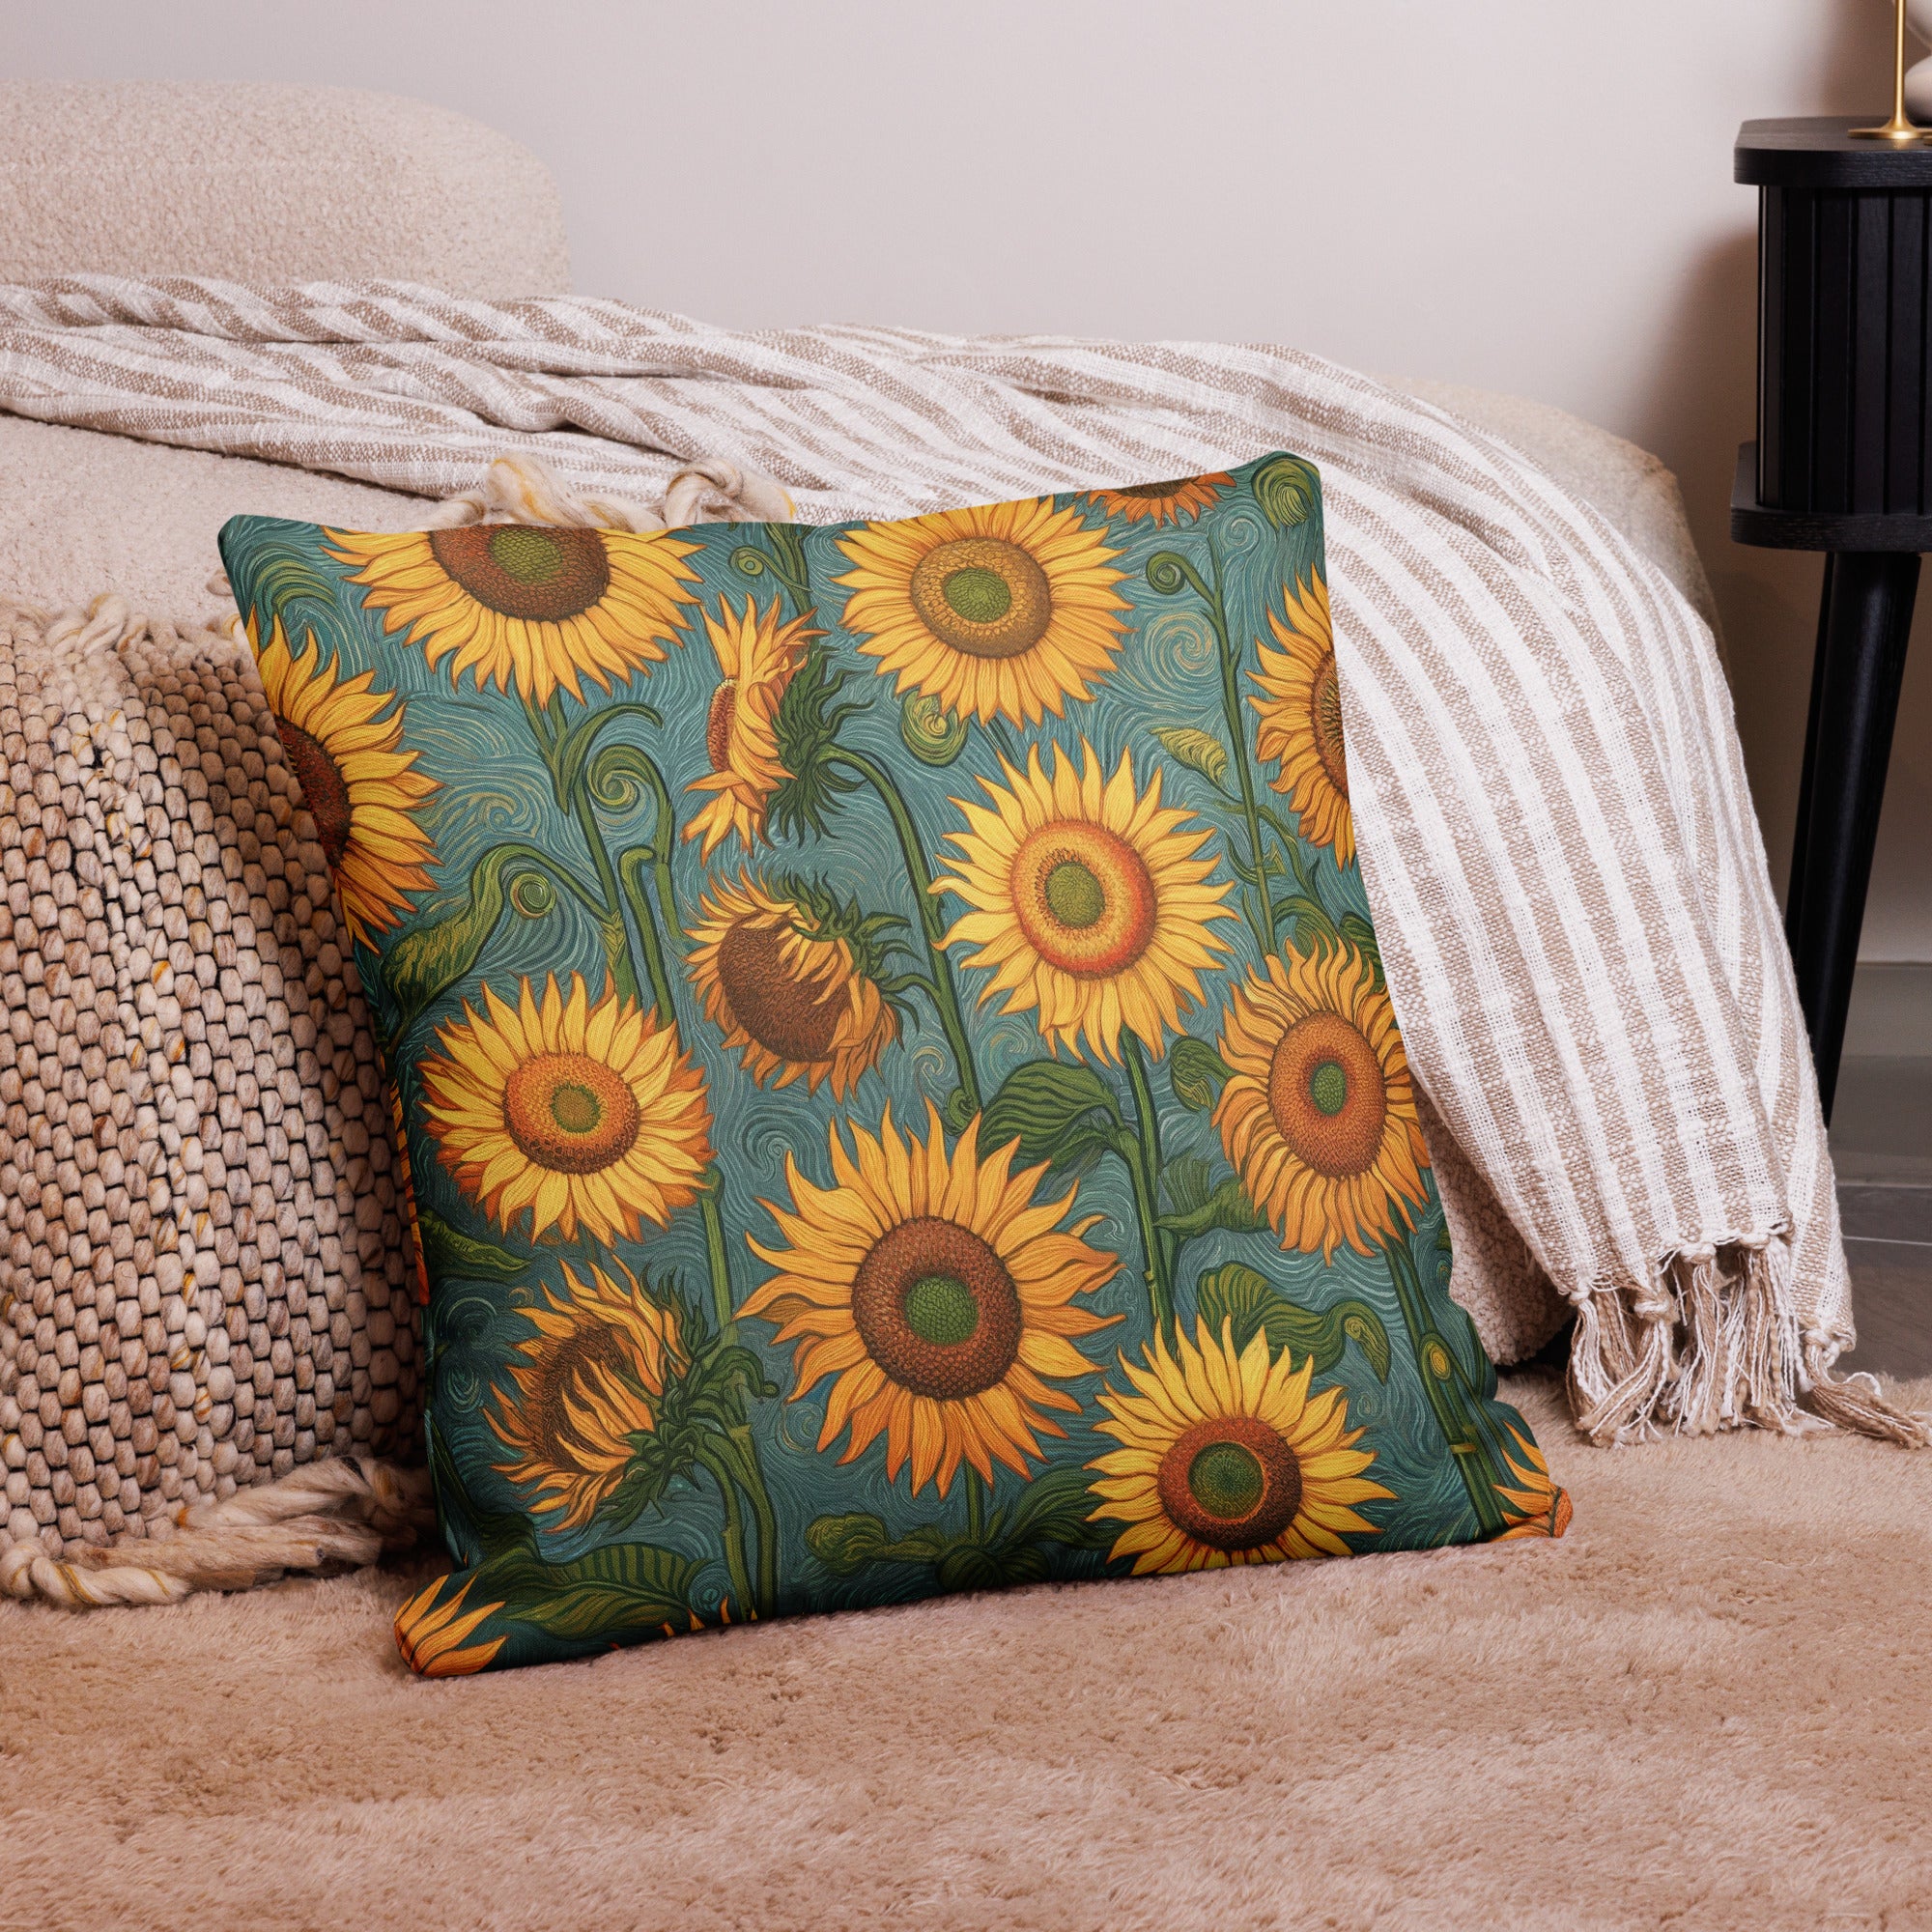 Vincent van Gogh 'Sunflowers' Famous Painting Premium Pillow | Premium Art Cushion